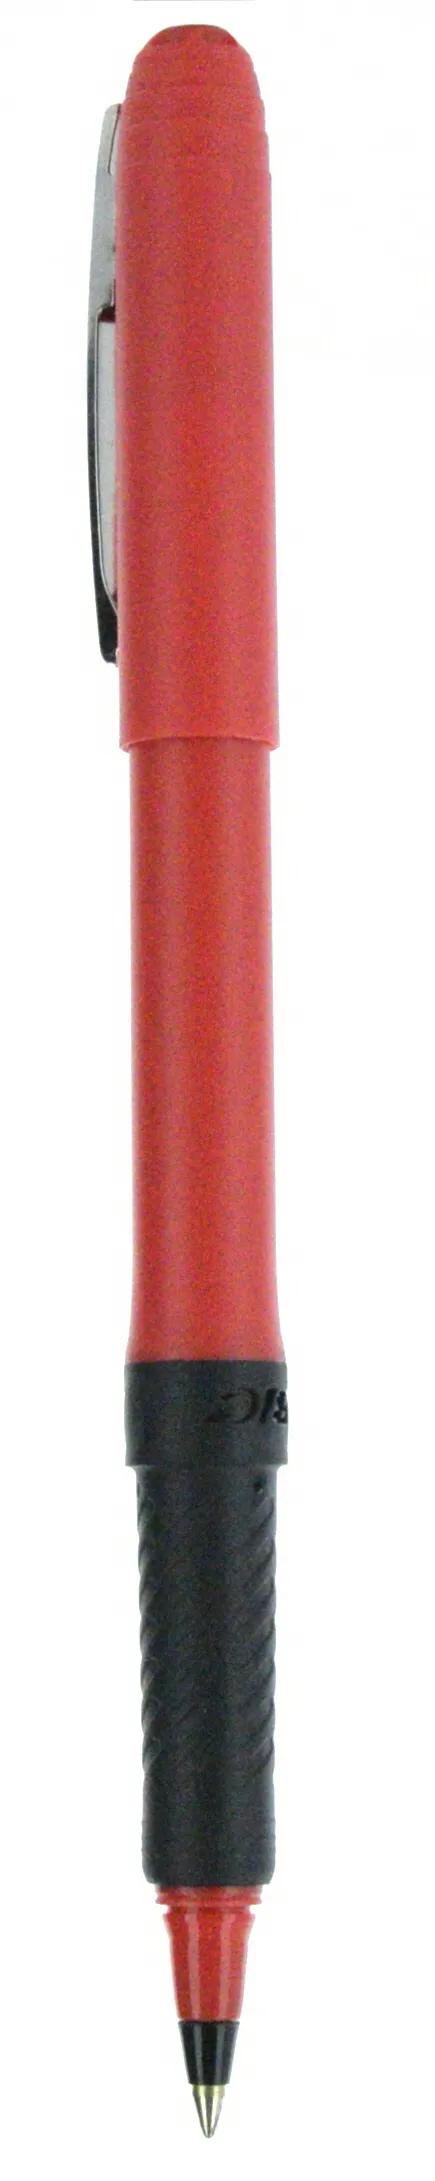 BIC® Grip Roller Pen 140 of 147